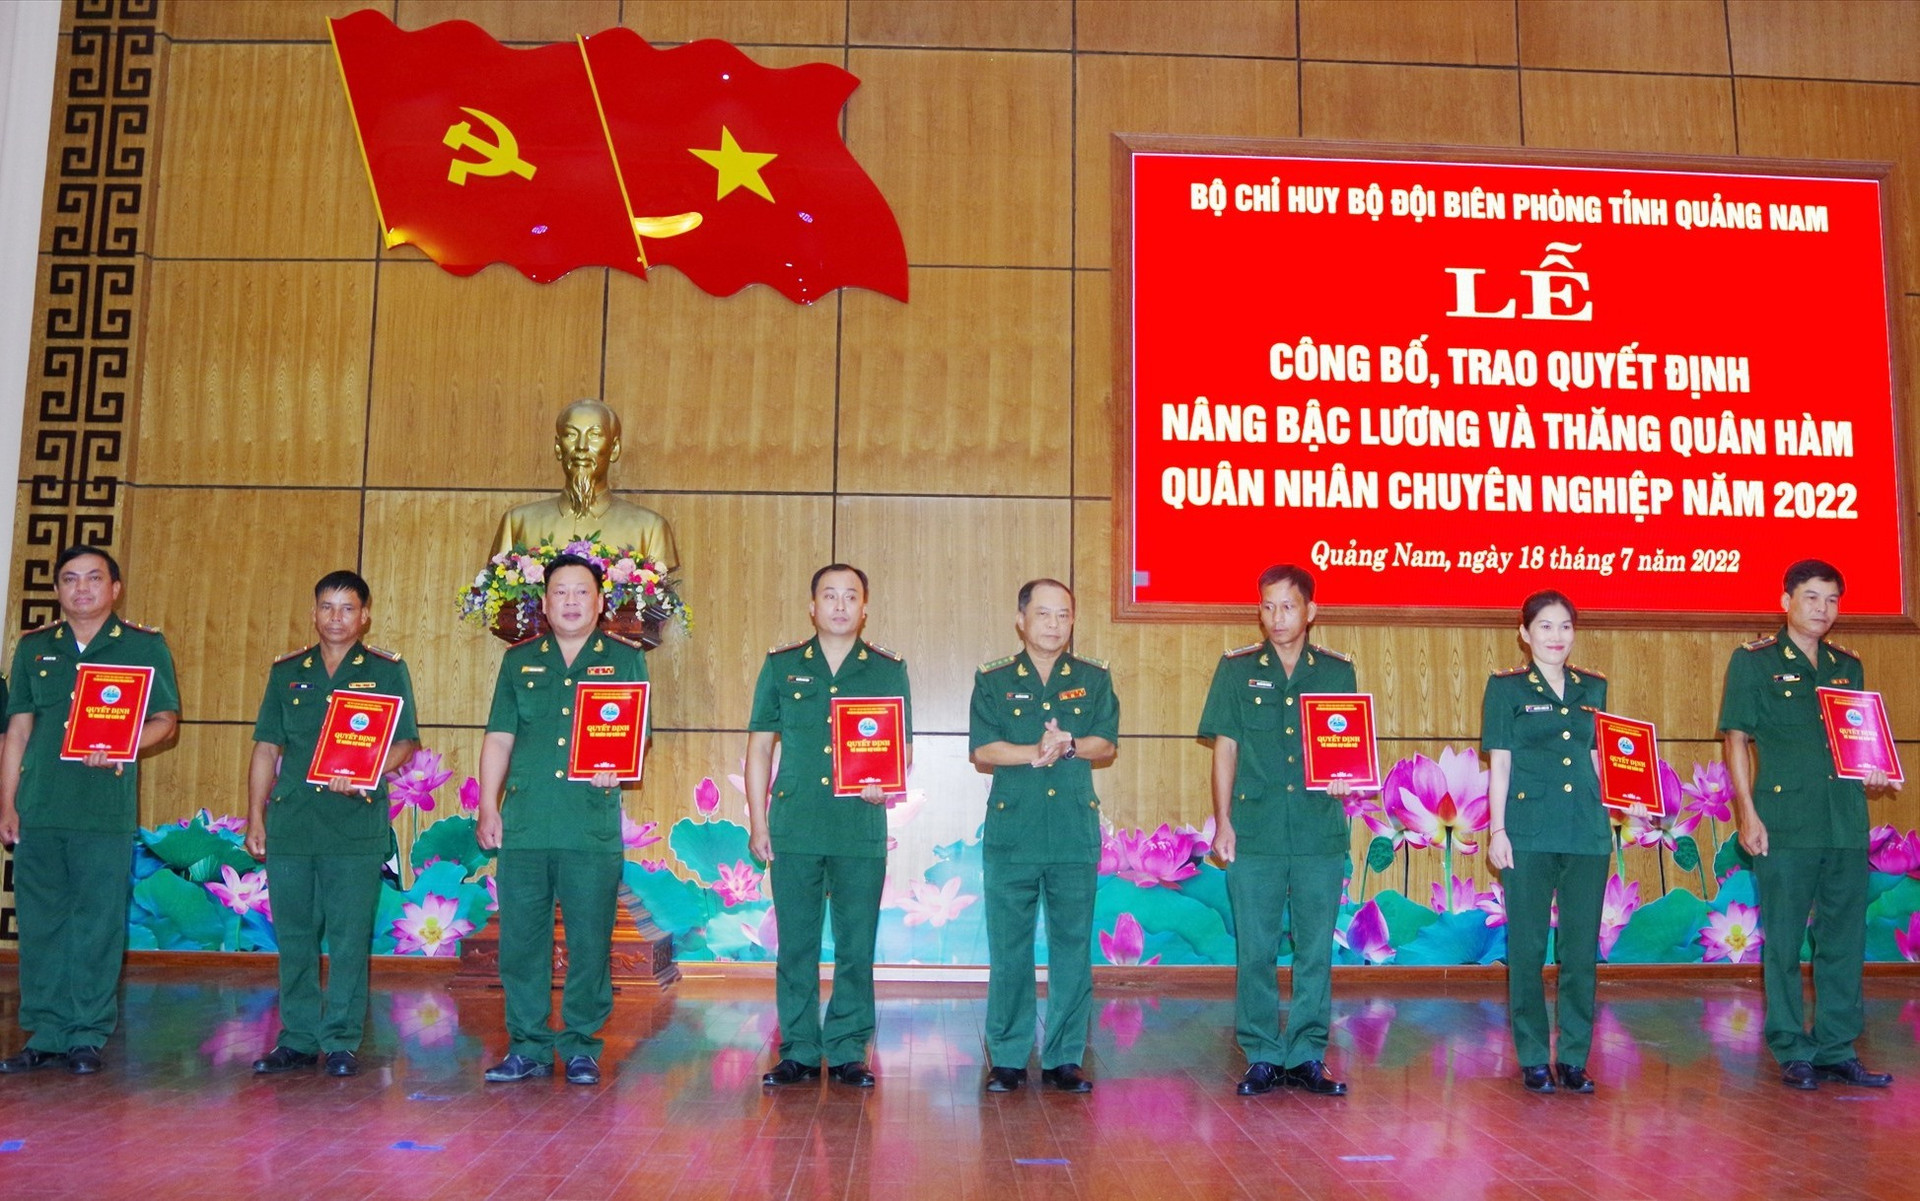 Đại tá Nguyễn Bá Thông – Chỉ huy trưởng BĐBP tỉnh trao quyết định thăng quân hàm cho các đồng chí QNCN. Ảnh: HỒNG ANH